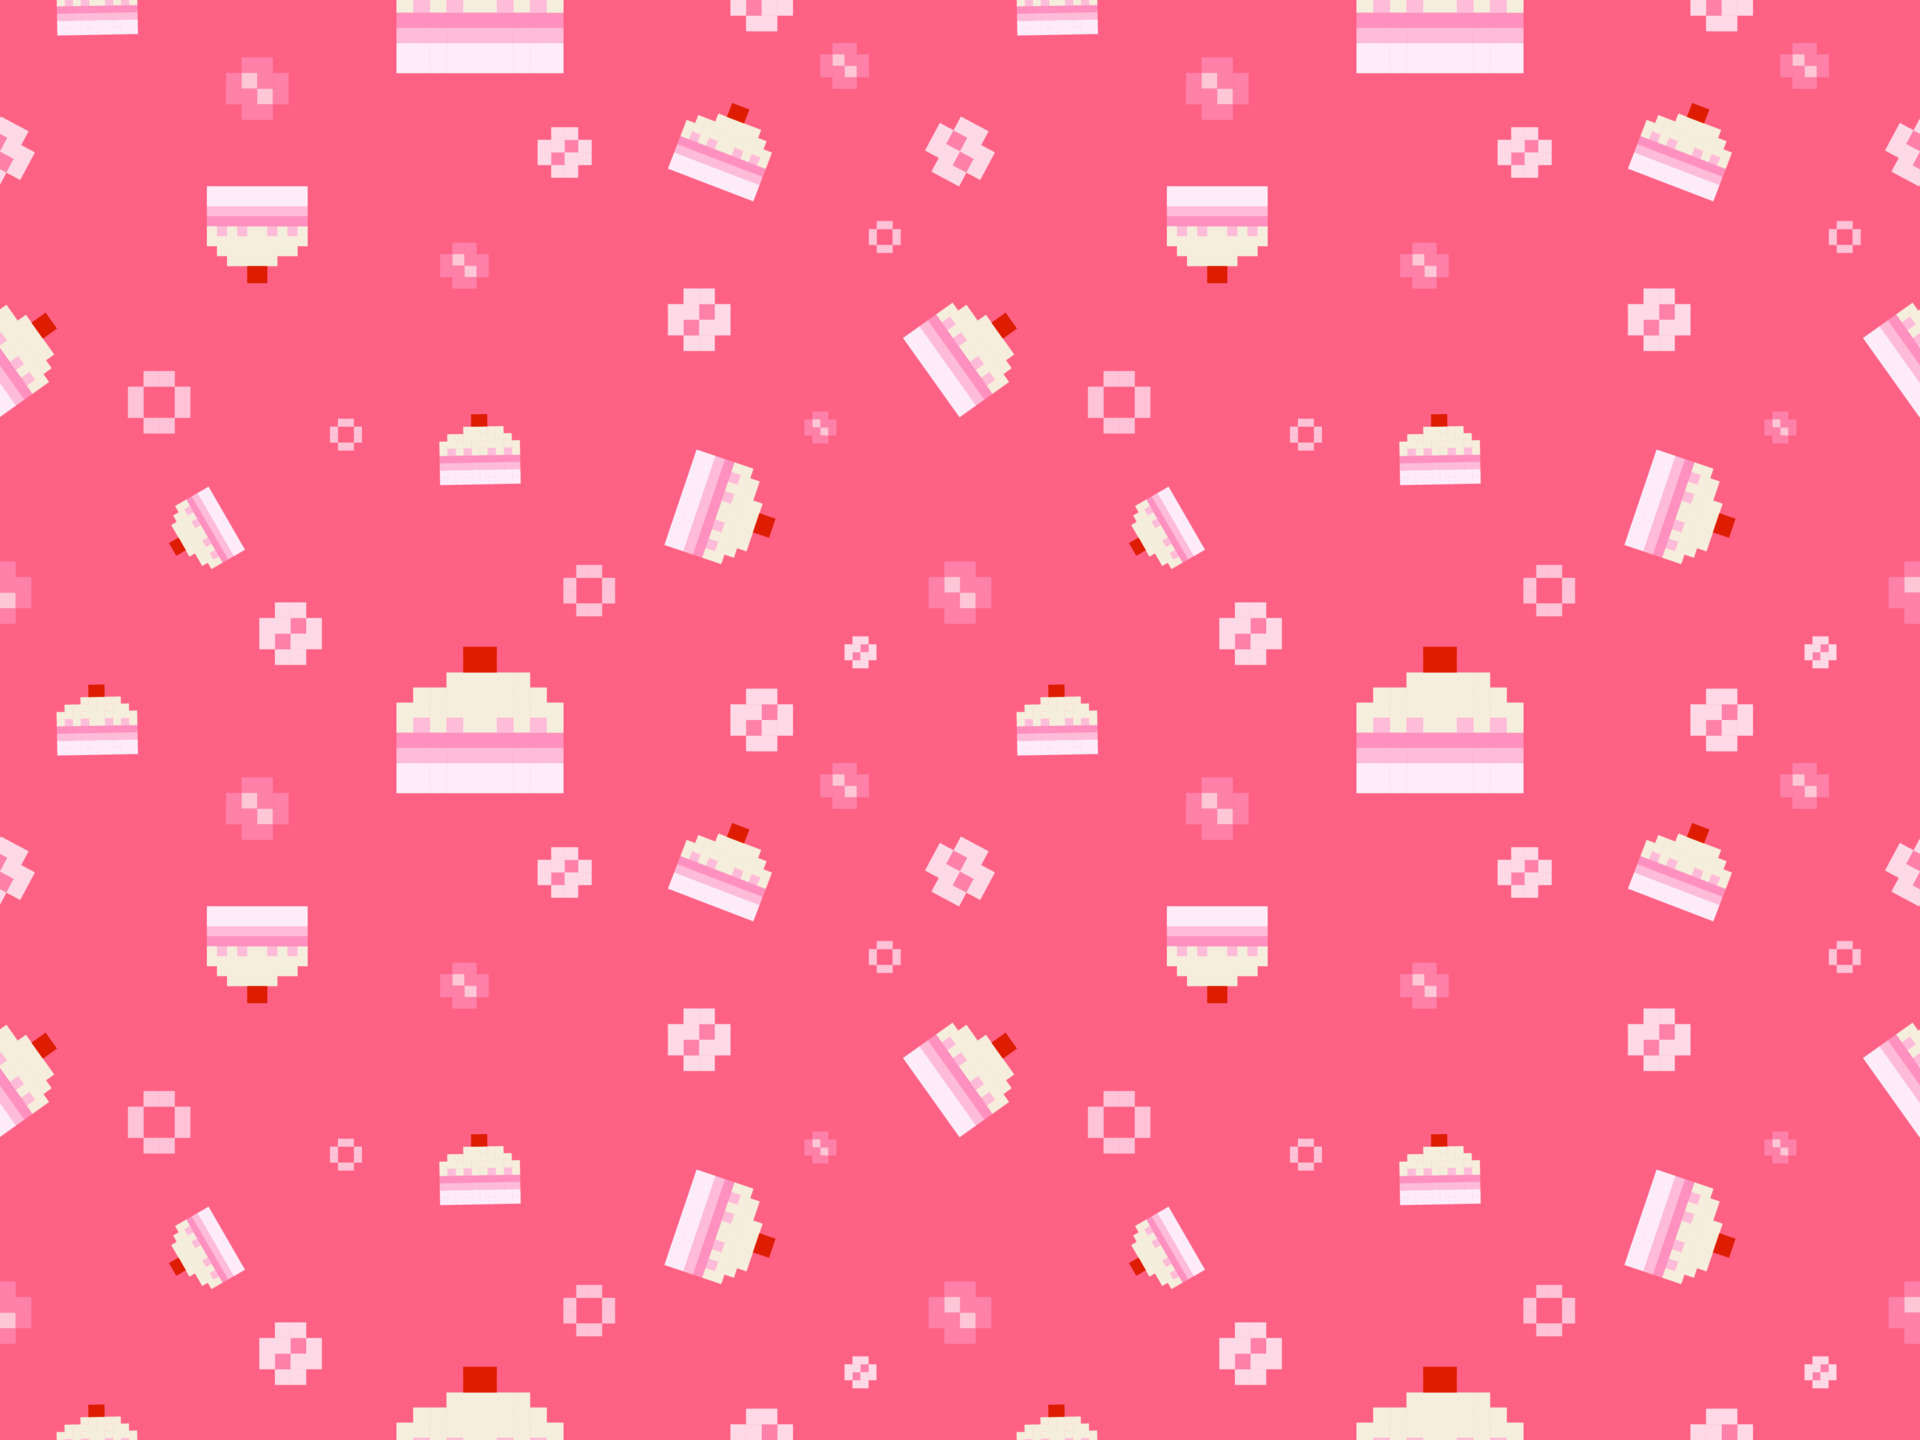 Mẫu vẽ liên tục nhân vật bánh kem trên nền hồng là một sự kết hợp tuyệt vời giữa màu sắc và hình ảnh. Chiếc bánh kem trông đơn giản nhưng cũng vô cùng đáng yêu và hấp dẫn. Hãy xem hình ảnh để cảm nhận được sự ngọt ngào của chiếc bánh này.